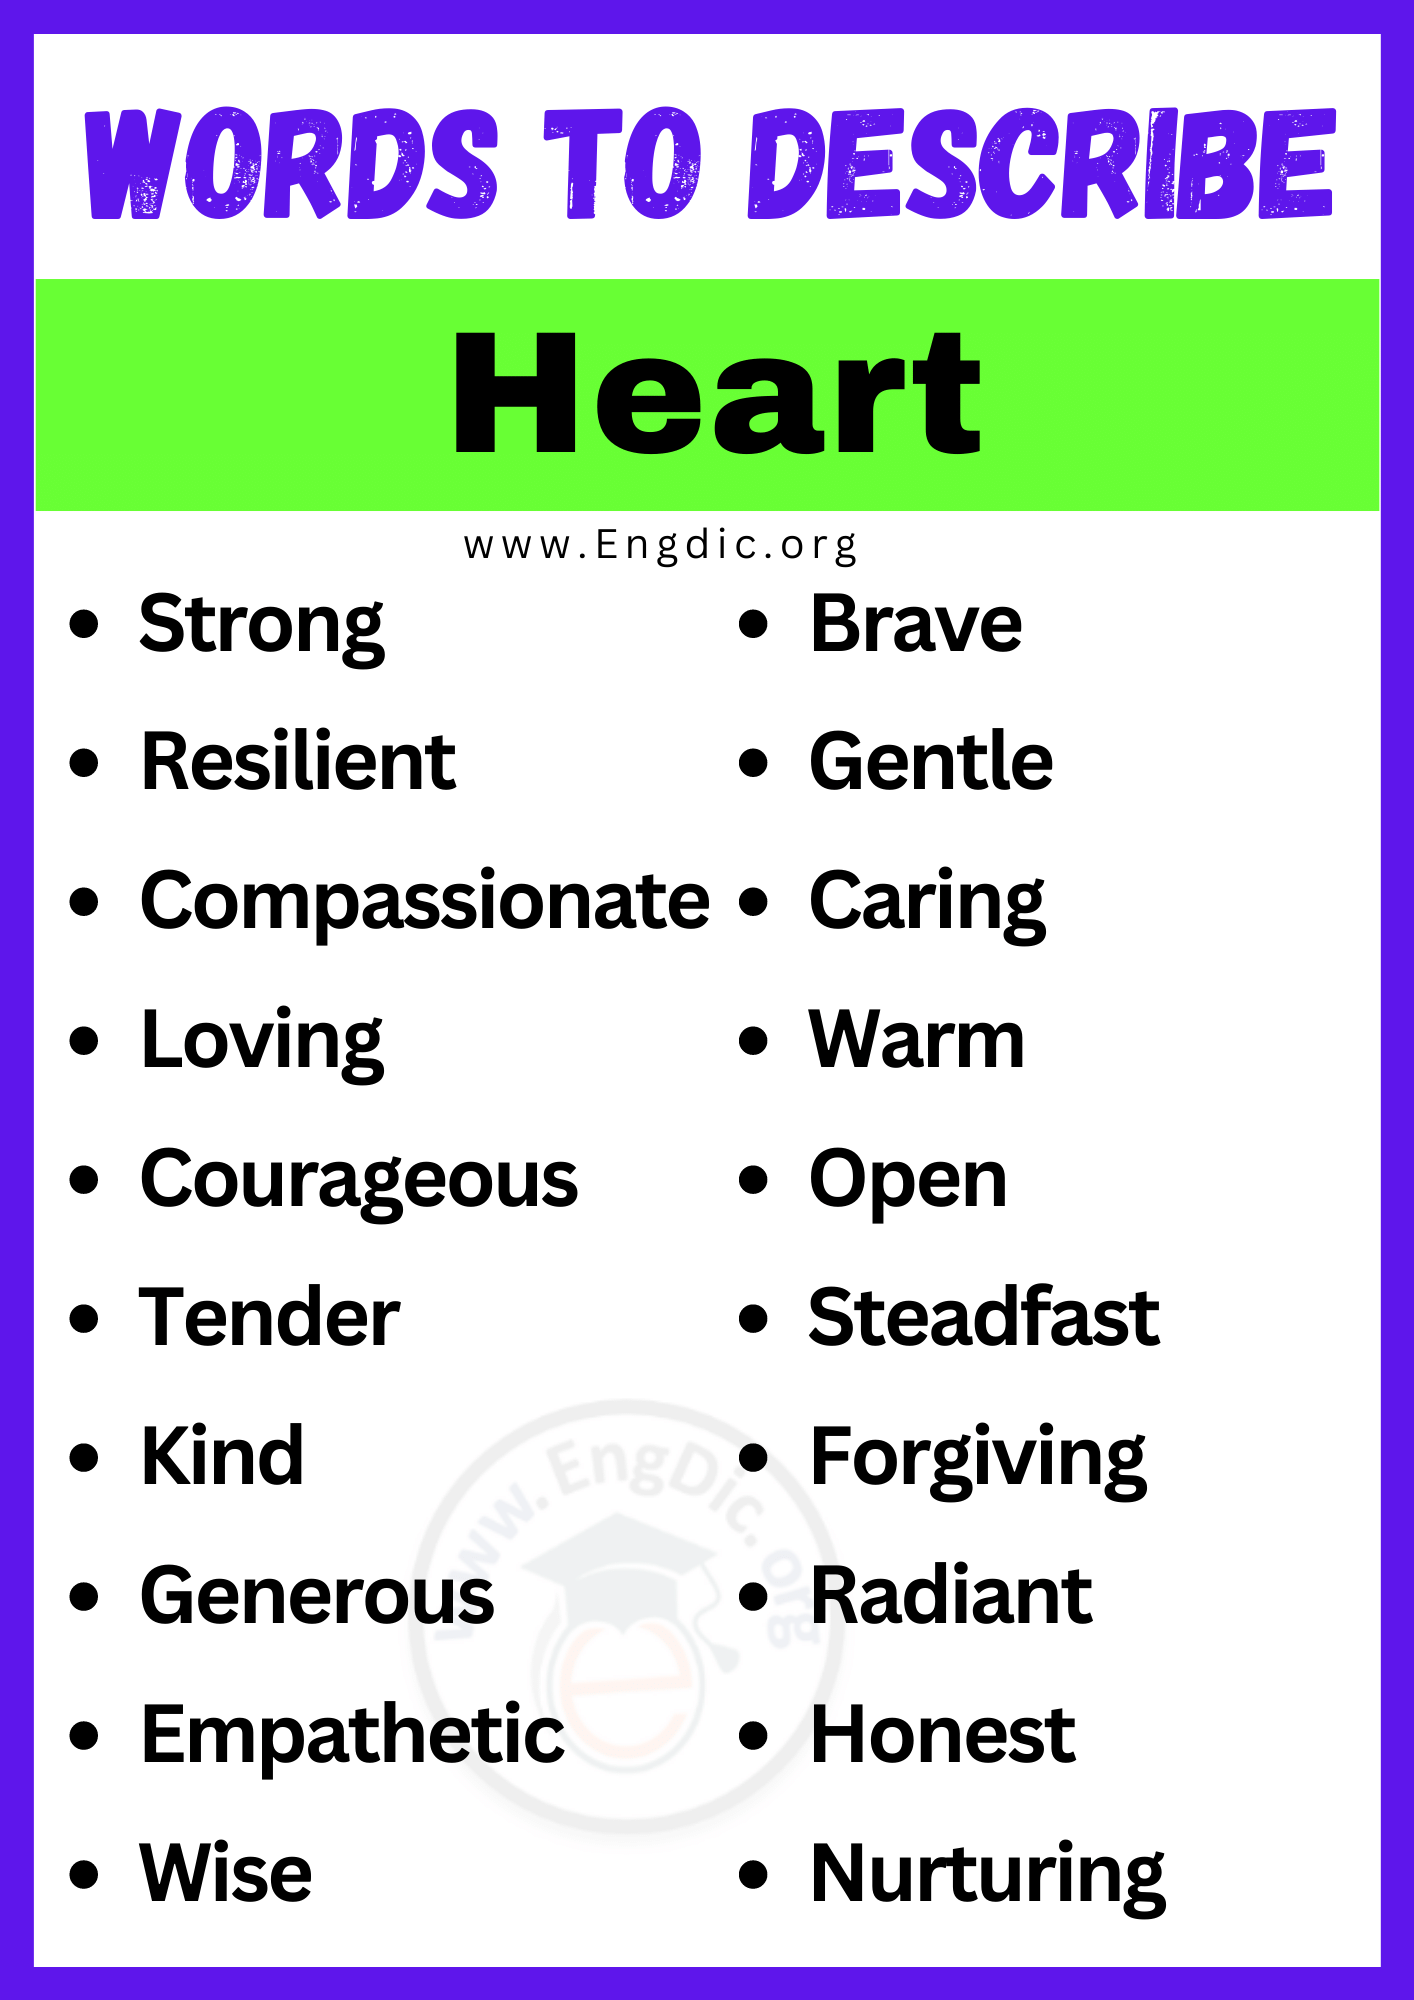 Words to Describe Heart